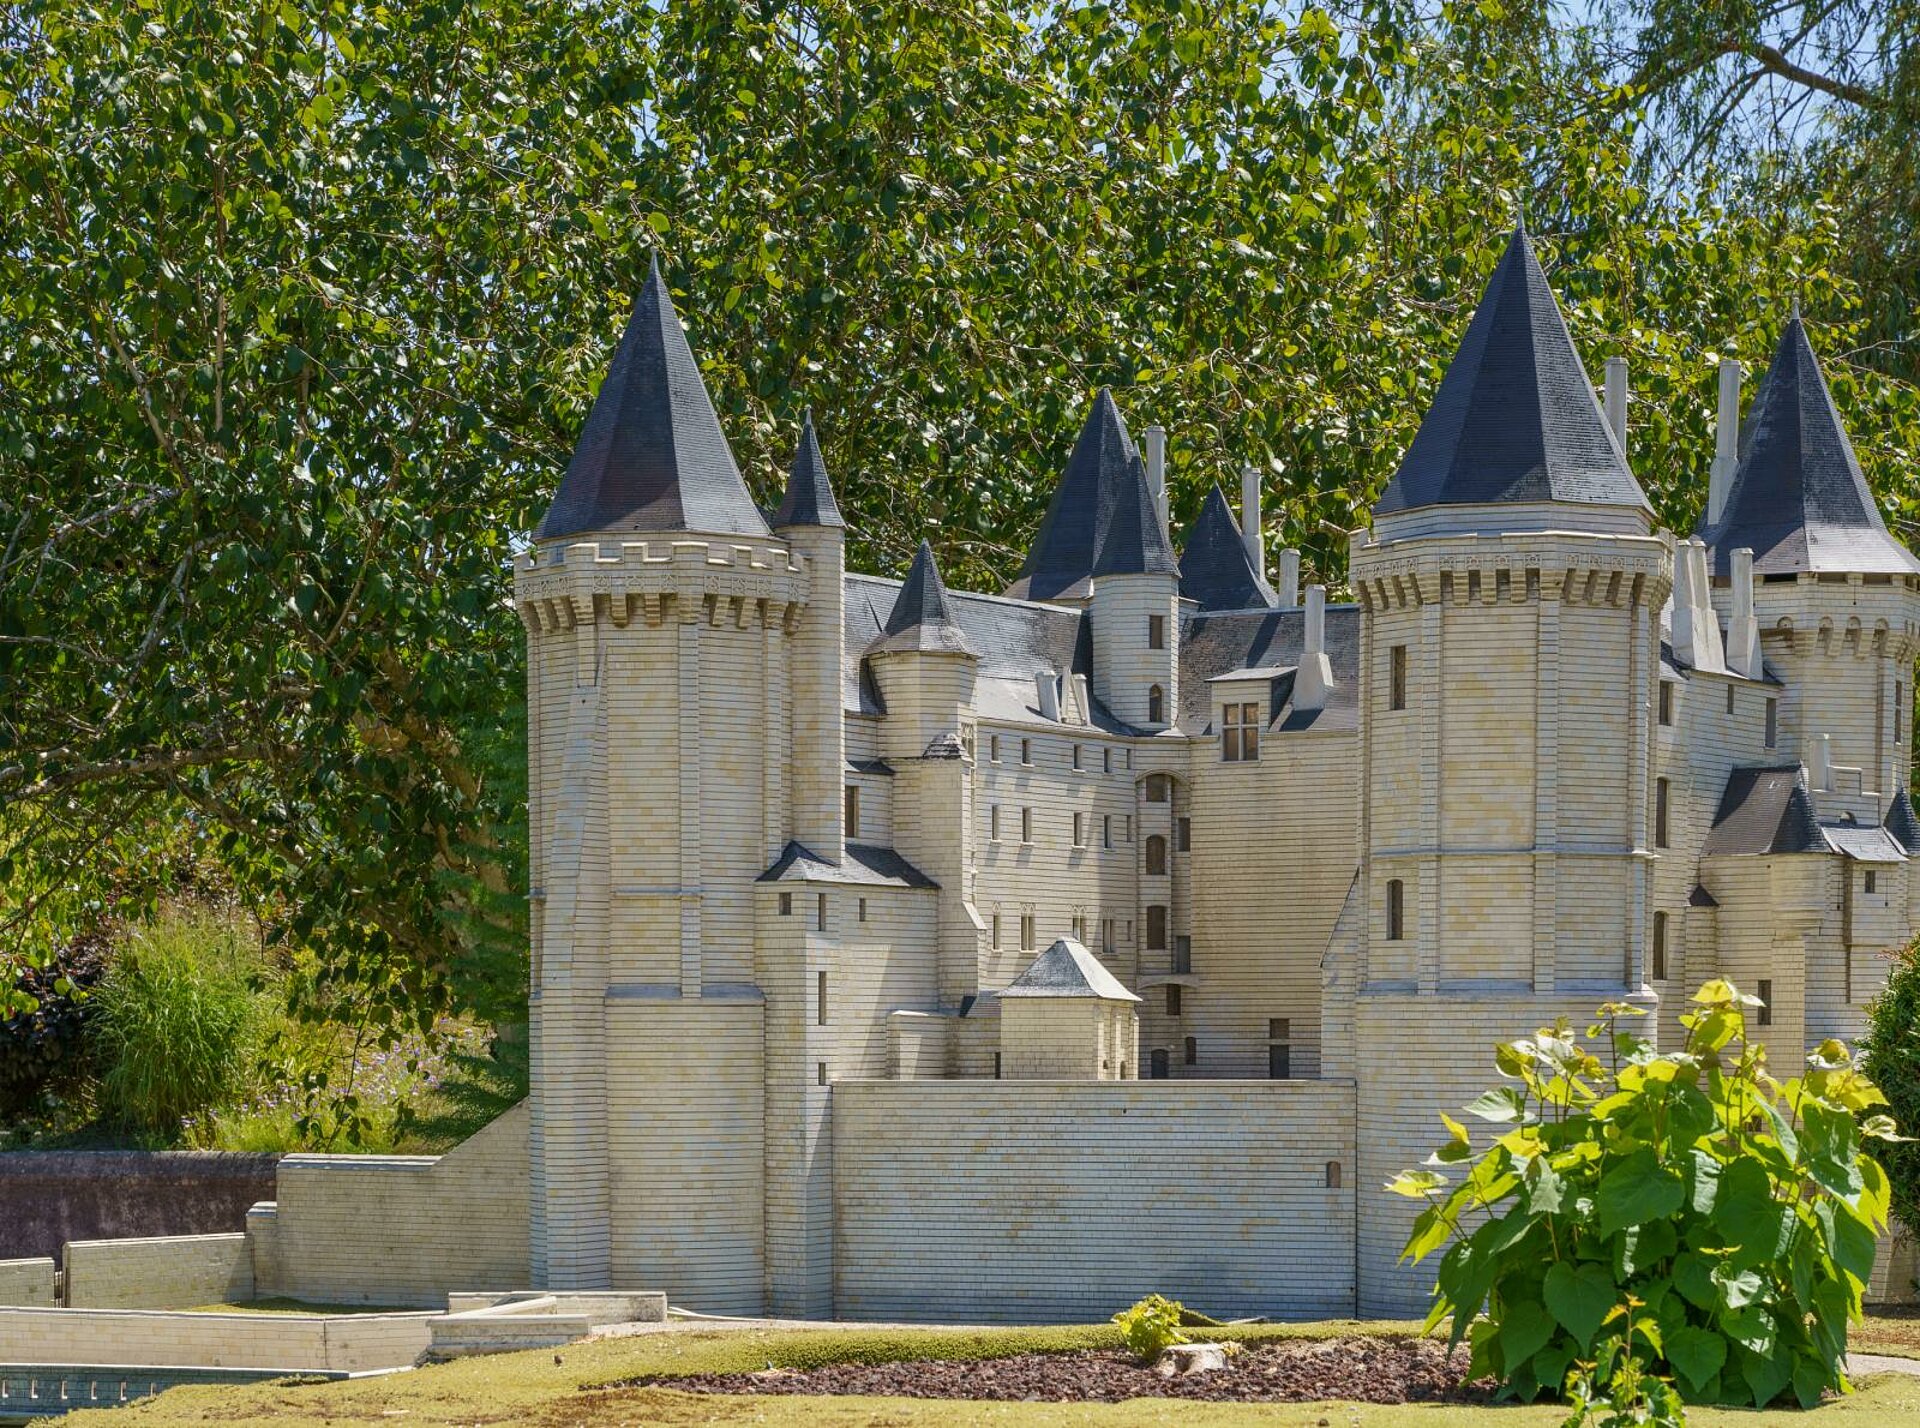 Château de Saumur